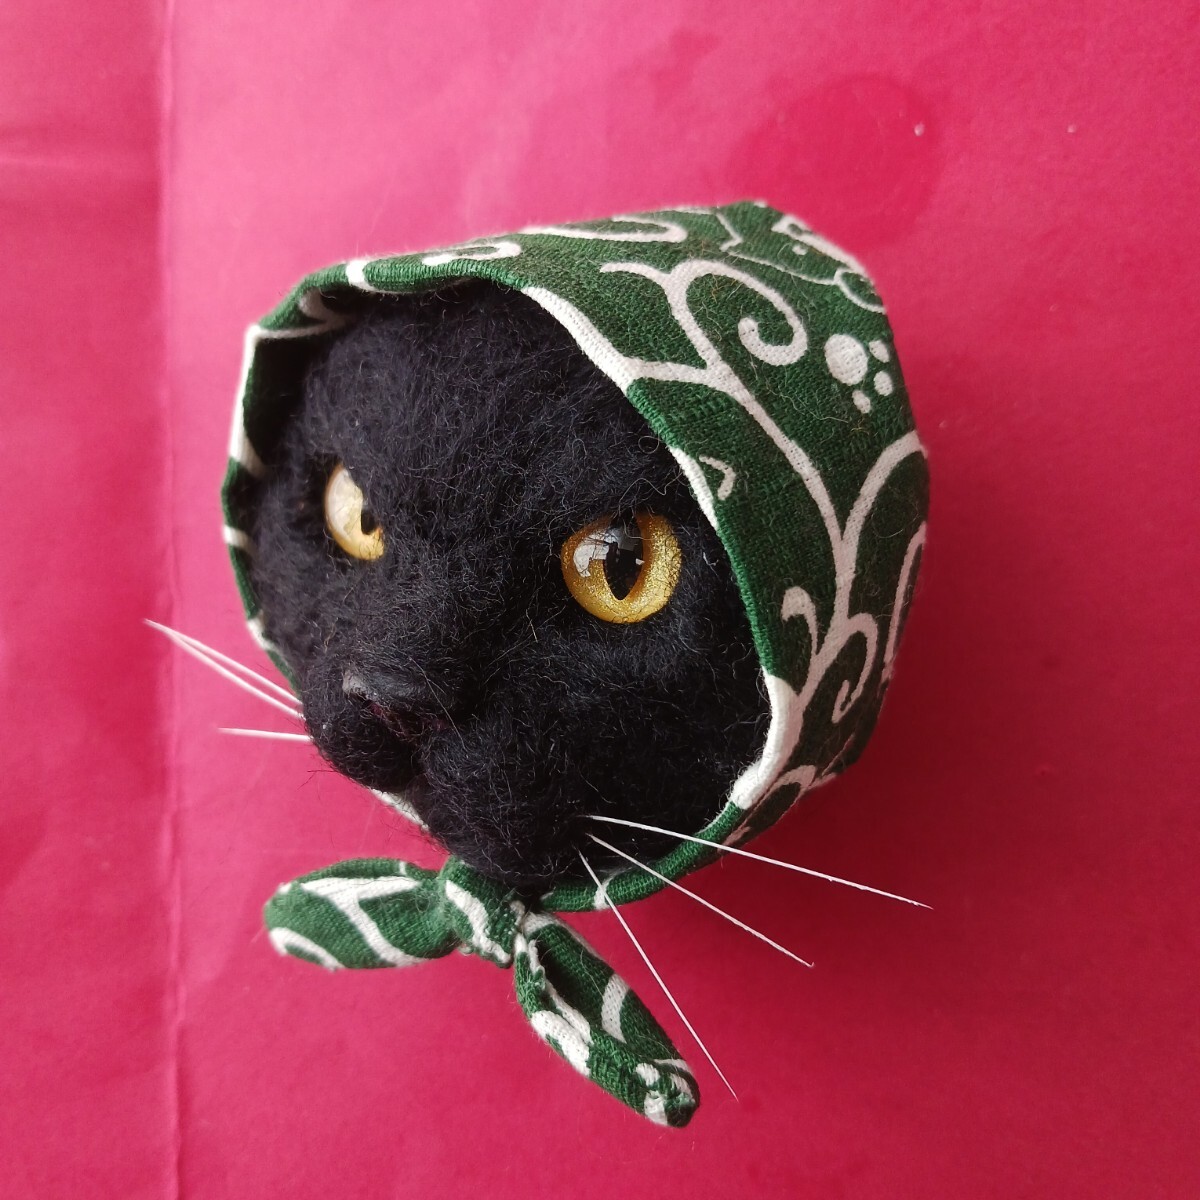 もたこ 羊毛フェルト猫 ハンドメイド 黒猫 ほっかむり猫 泥棒猫 風呂敷猫 唐草模様風呂敷 羊毛フェルト黒猫 羊毛フェルトリアル猫の画像8